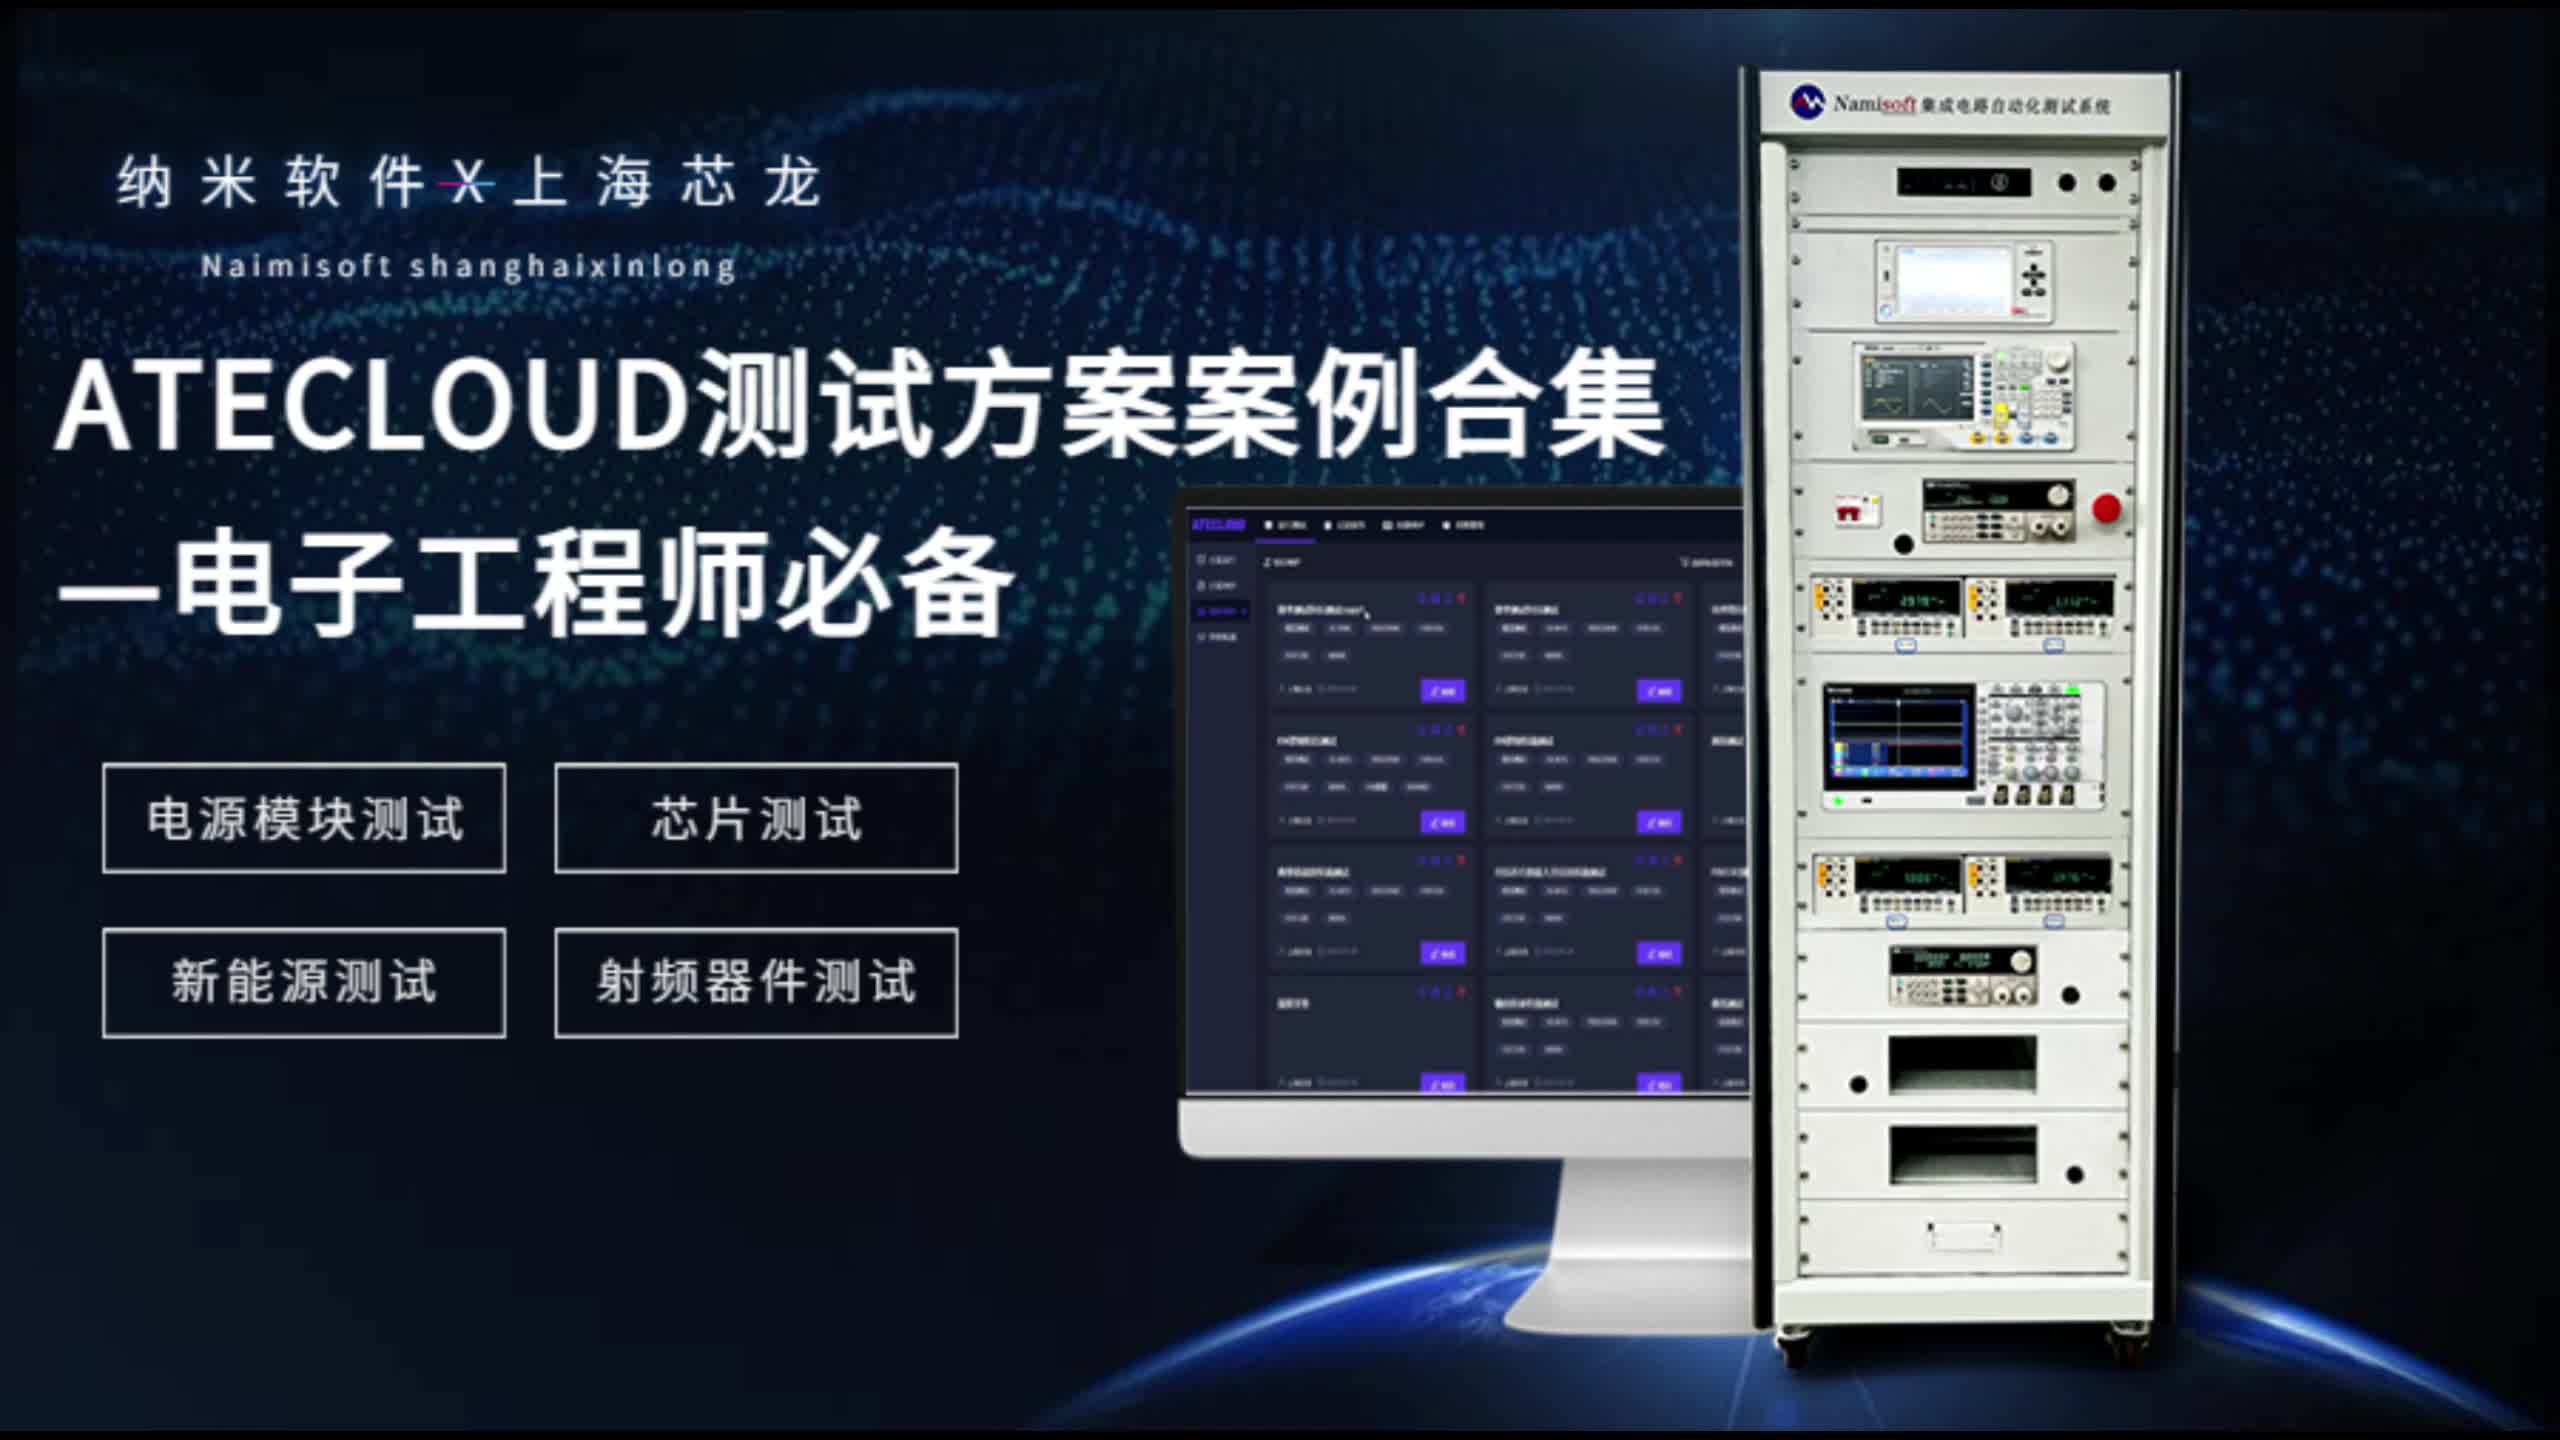 【電子工程師必備】納米軟件X上海芯龍ATECLOUD測試方案案例合集#上位機軟件 #系統集成 